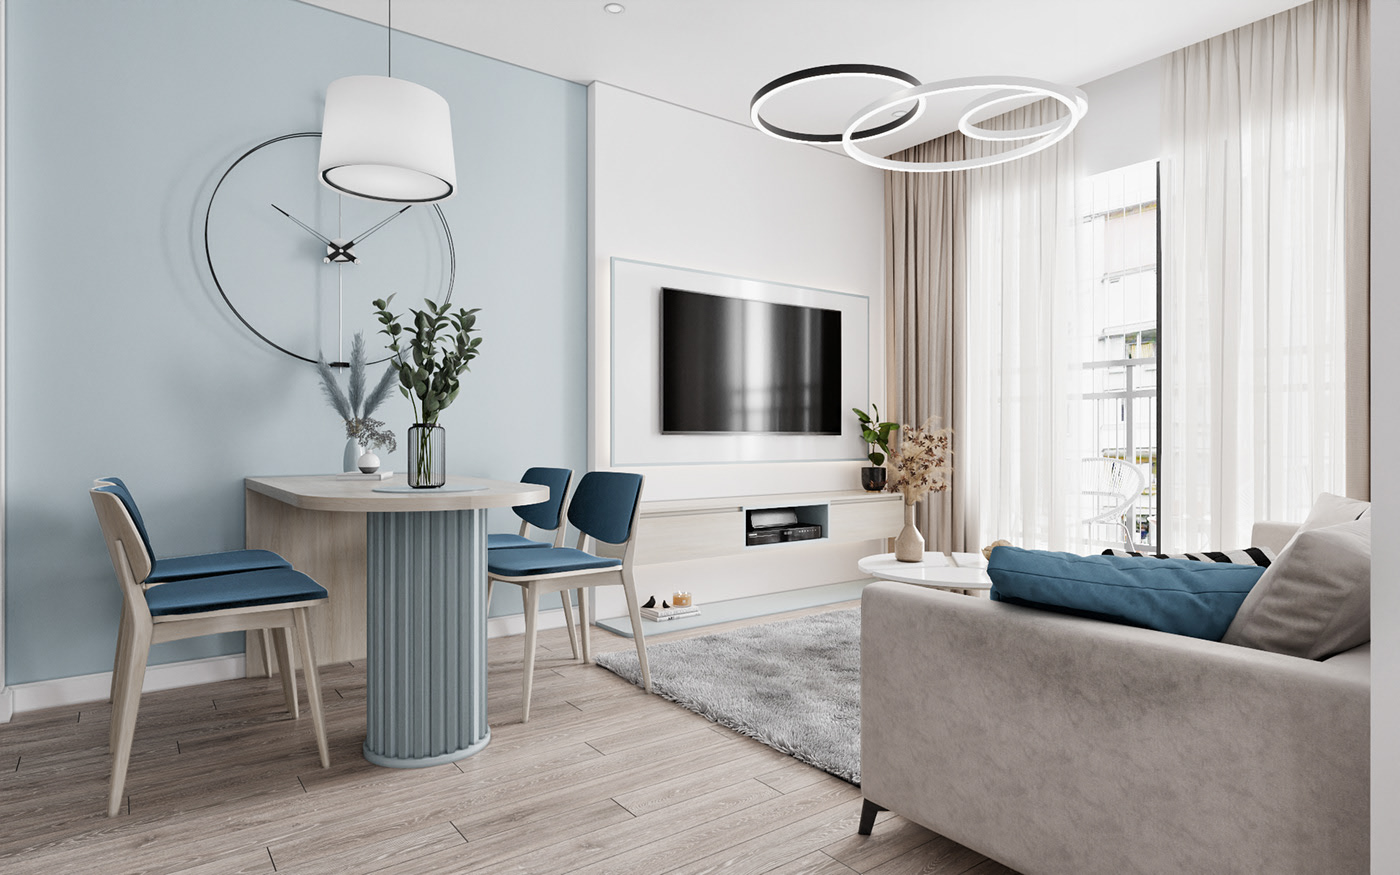  thiết kế nội thất chung cư vinhomes smart city trọn gói 100tr tặng giá bát cố định